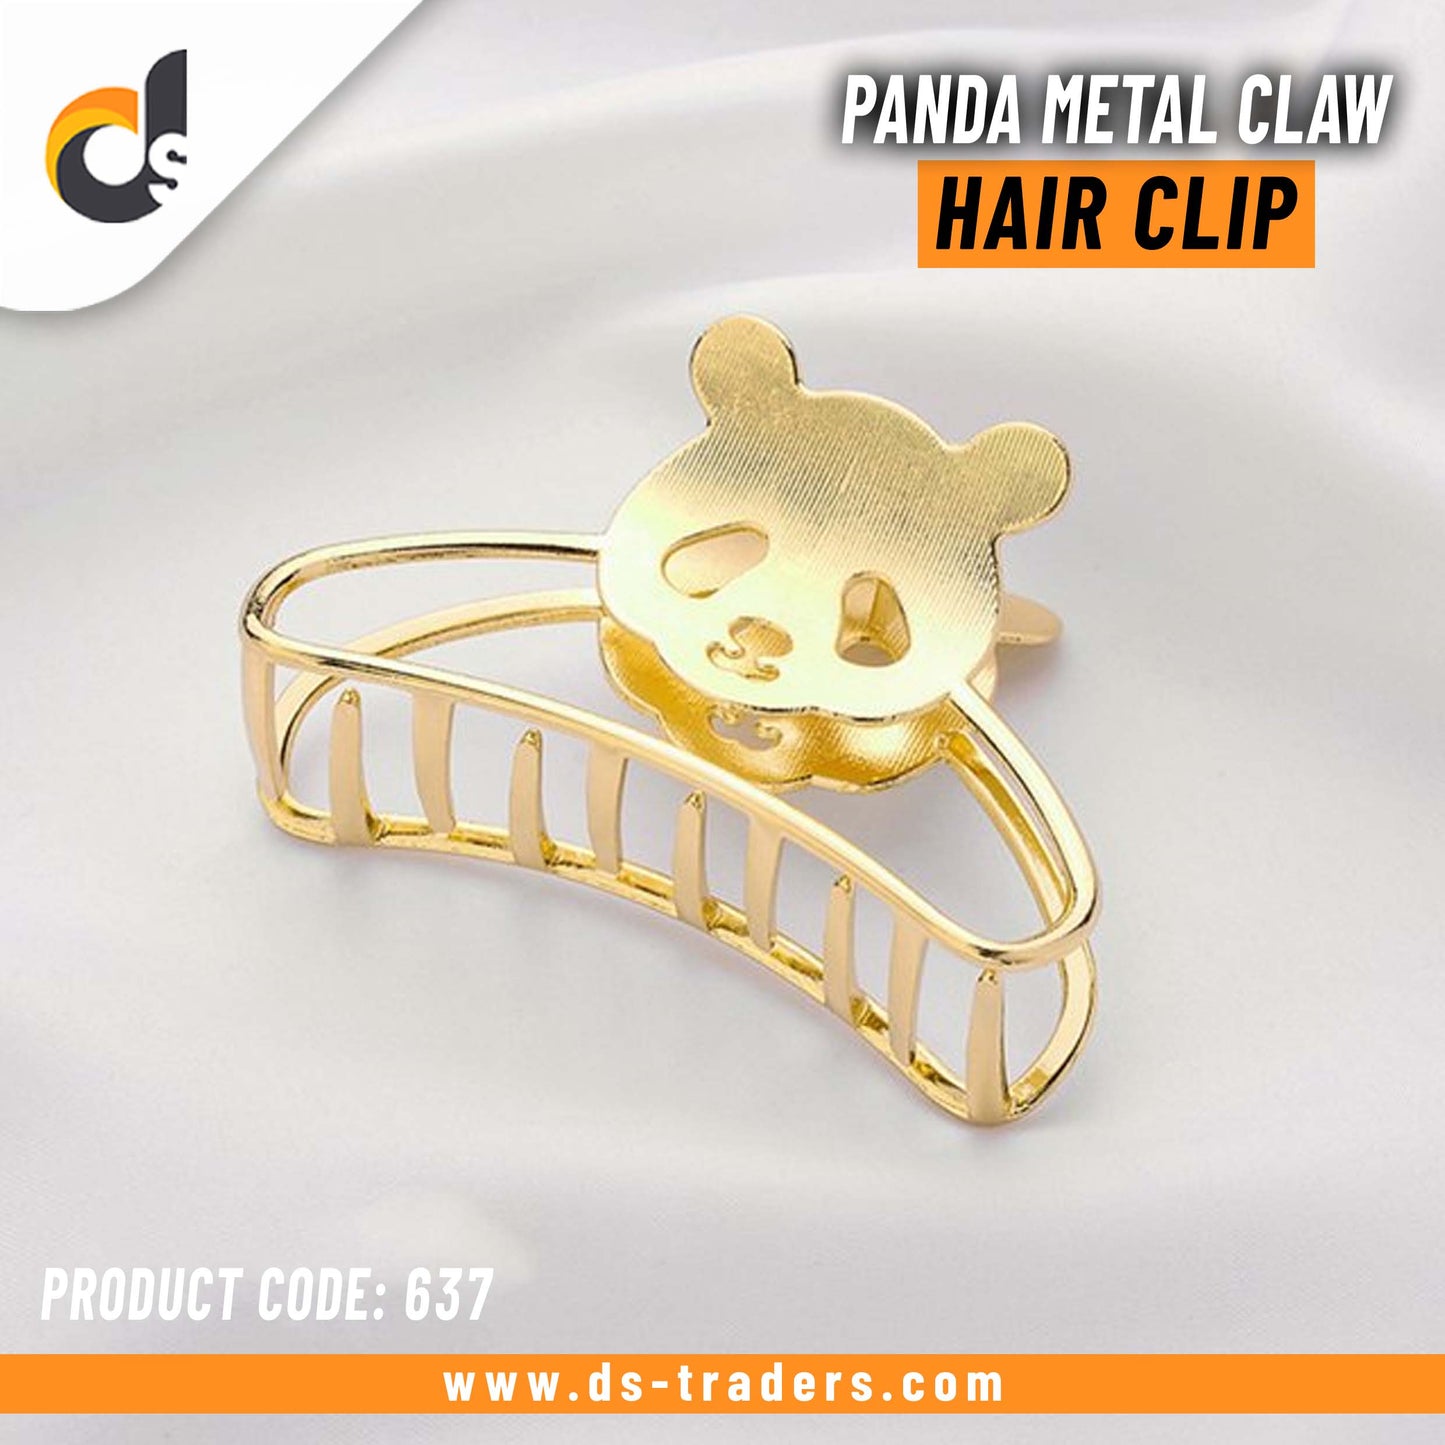 Panda Metal Claw Hair Clip